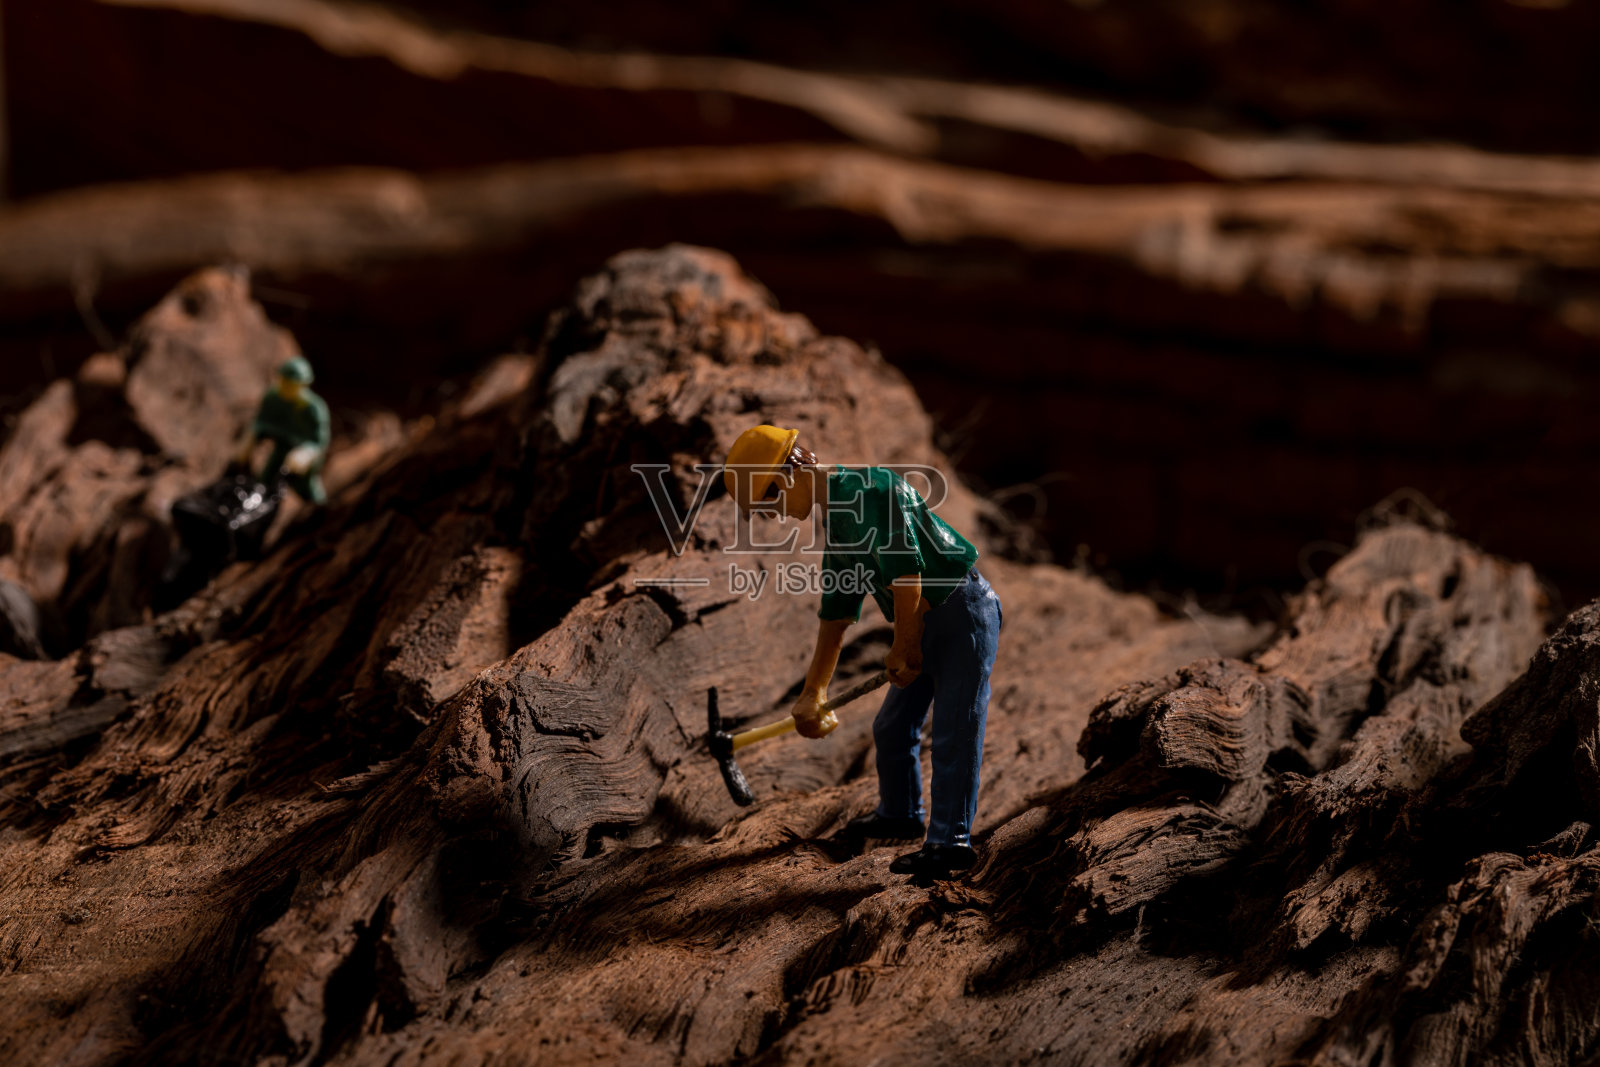 矿工玩具人偶模型照片摄影图片